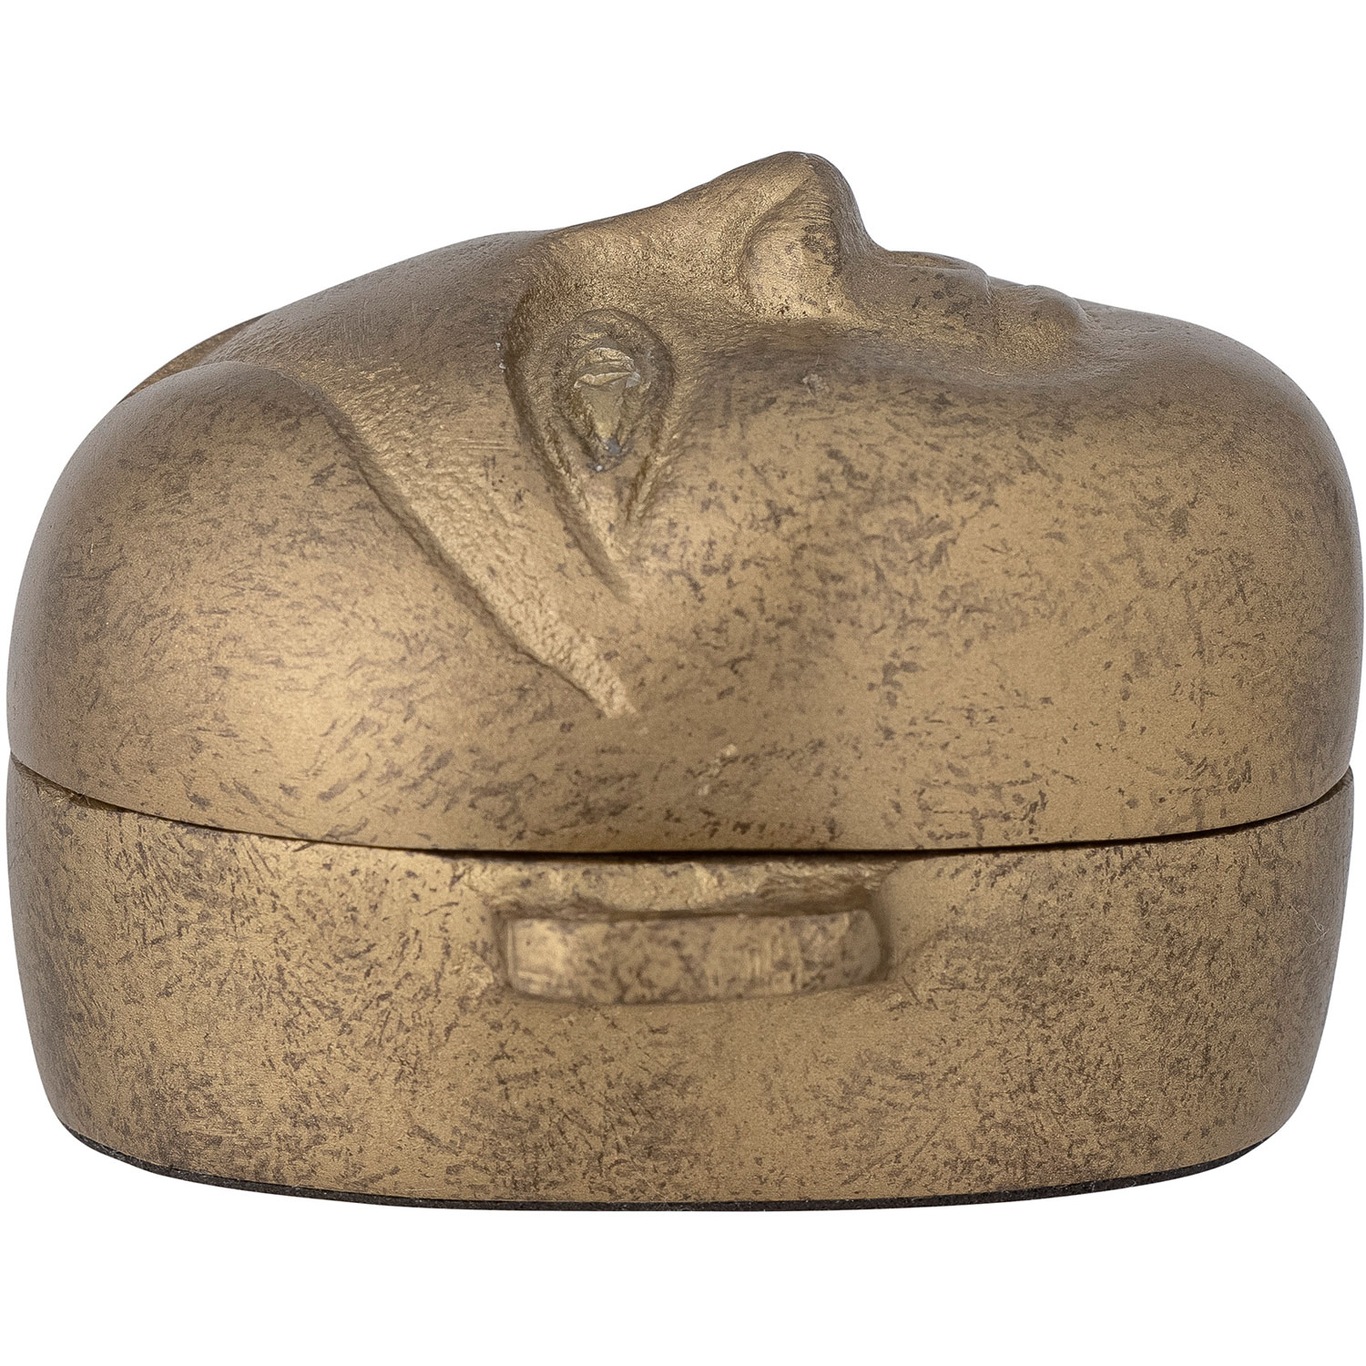 Jola Box With Lid 8x9 cm, Brass